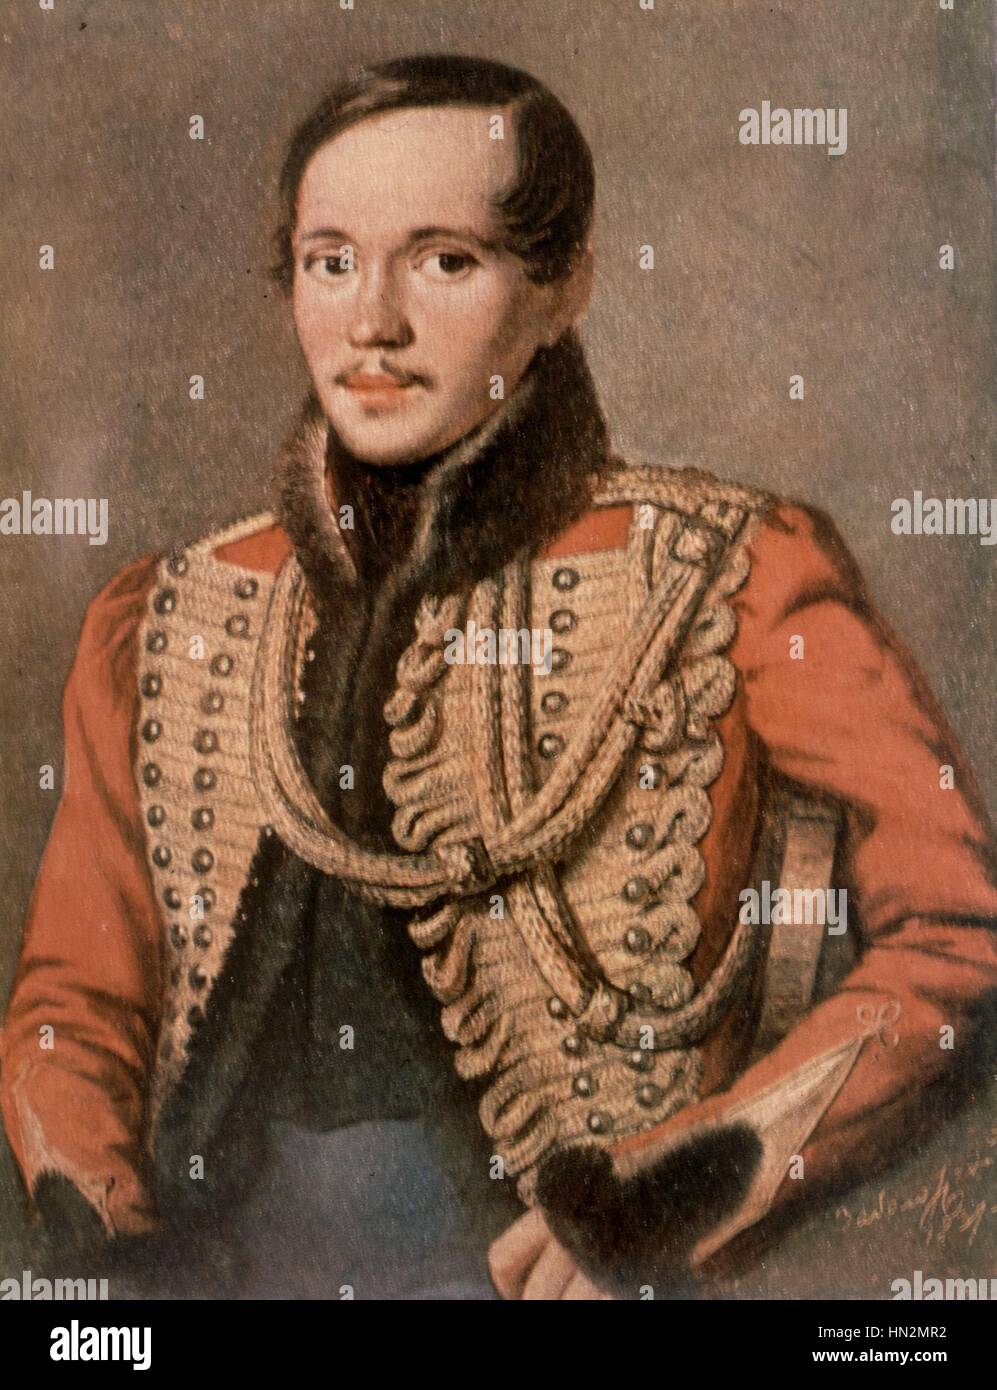 Porträt von Lermontow, russischer Dichter (1814-1841) 19. Jahrhundert Russland Privatsammlung Stockfoto